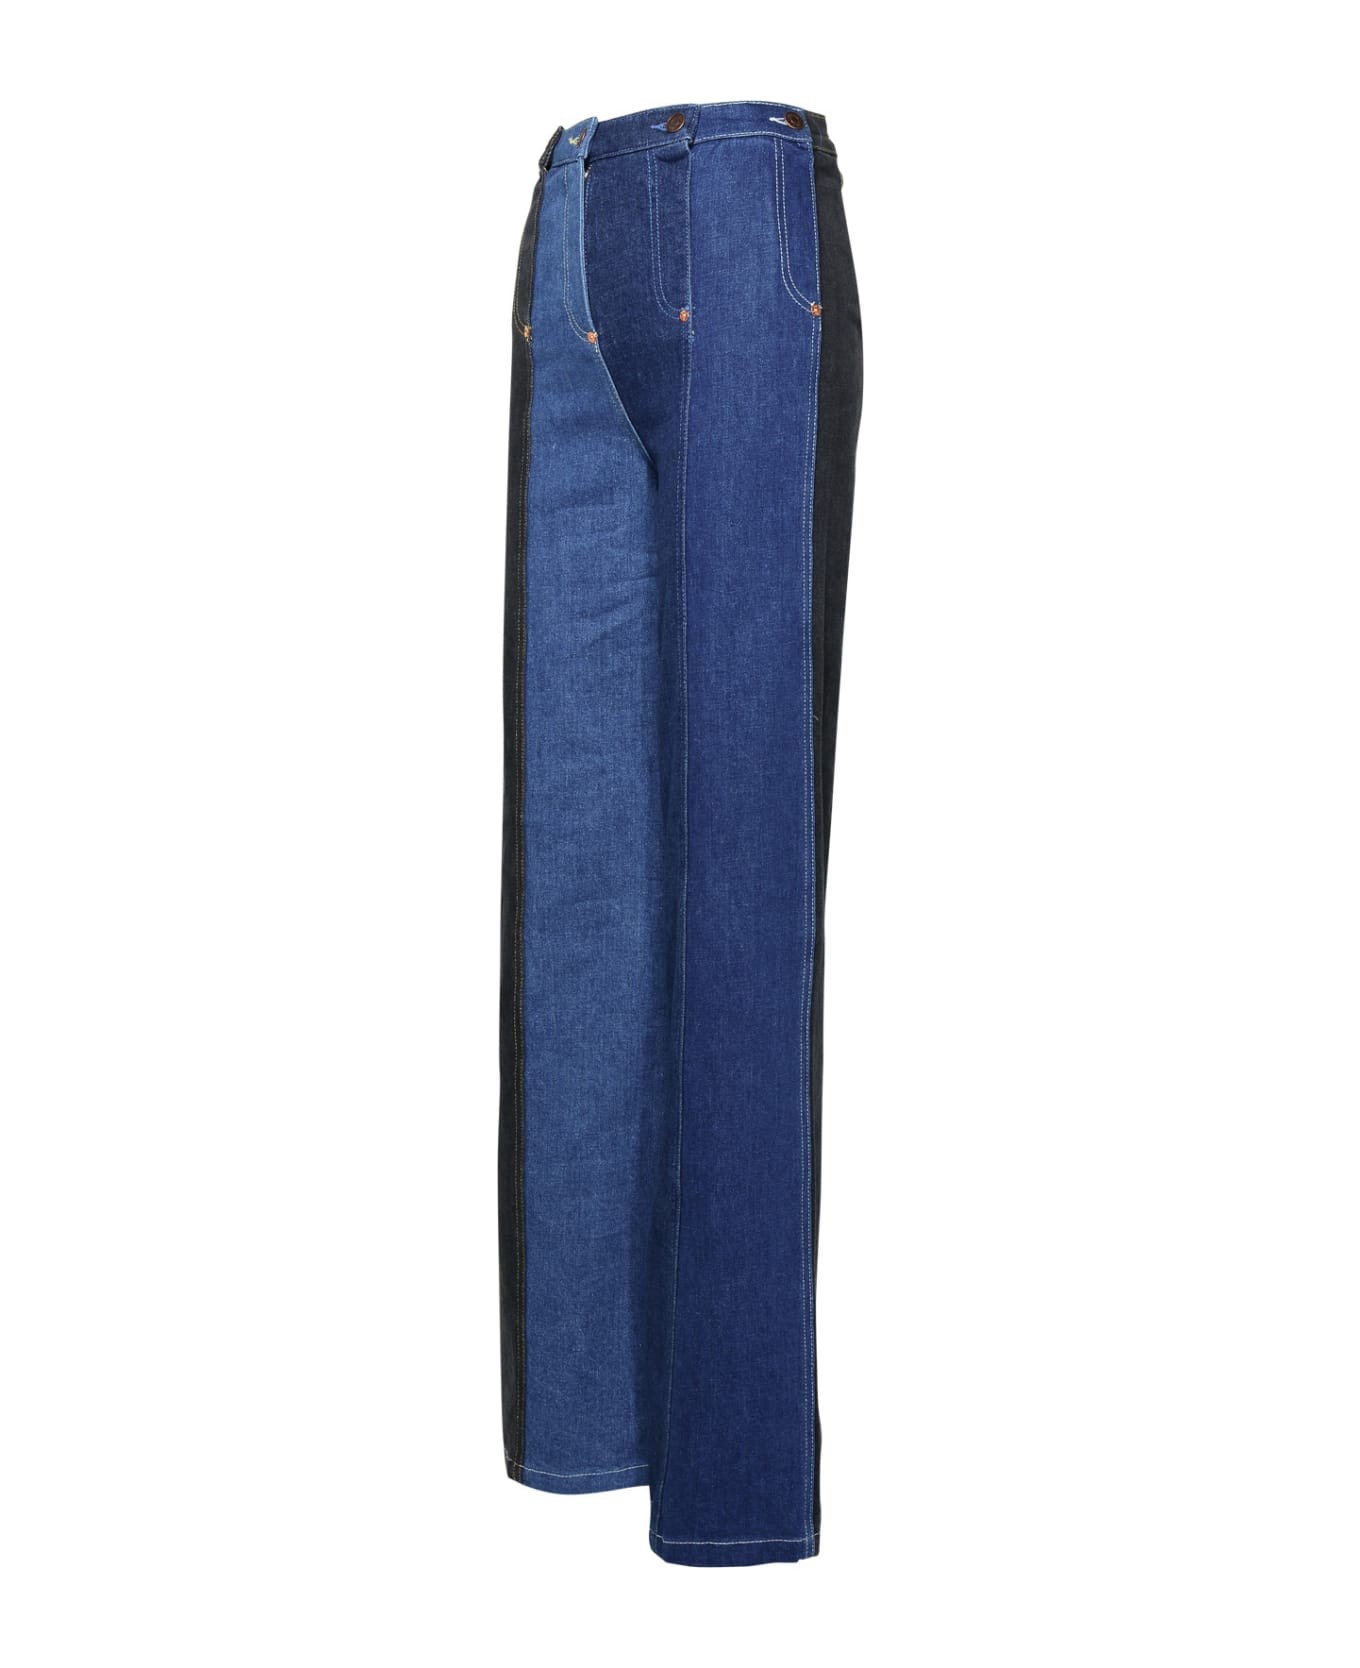 M05CH1N0 Jeans Blue Cotton Jeans - BLUE